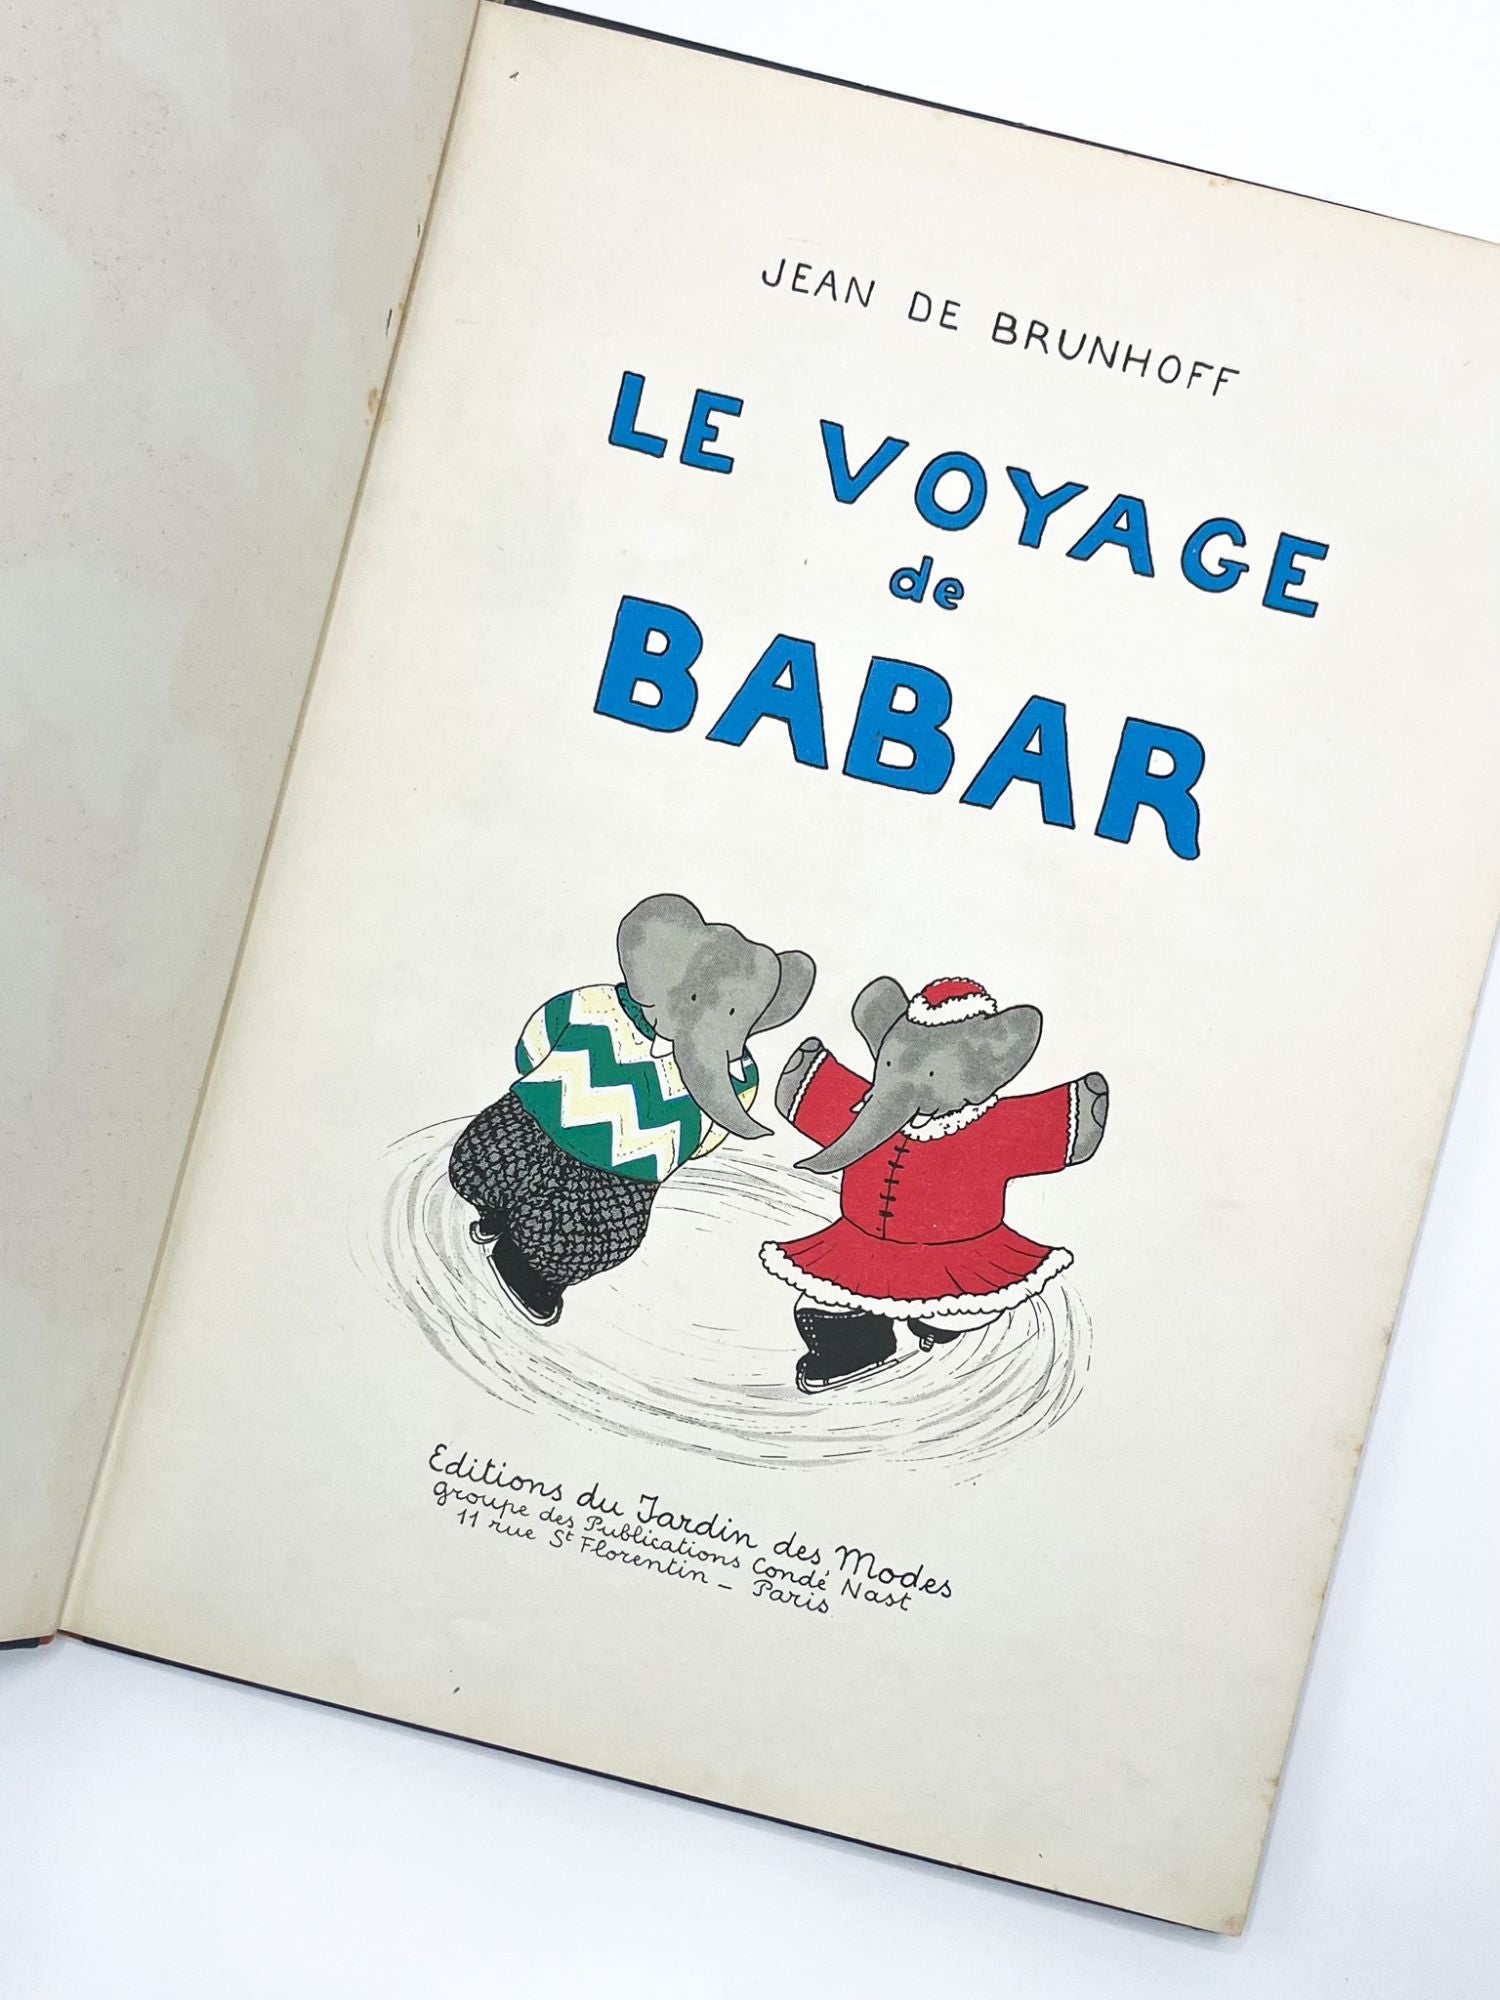 LE VOYAGE DE BABAR by Jean de Brunhoff on Type Punch Matrix